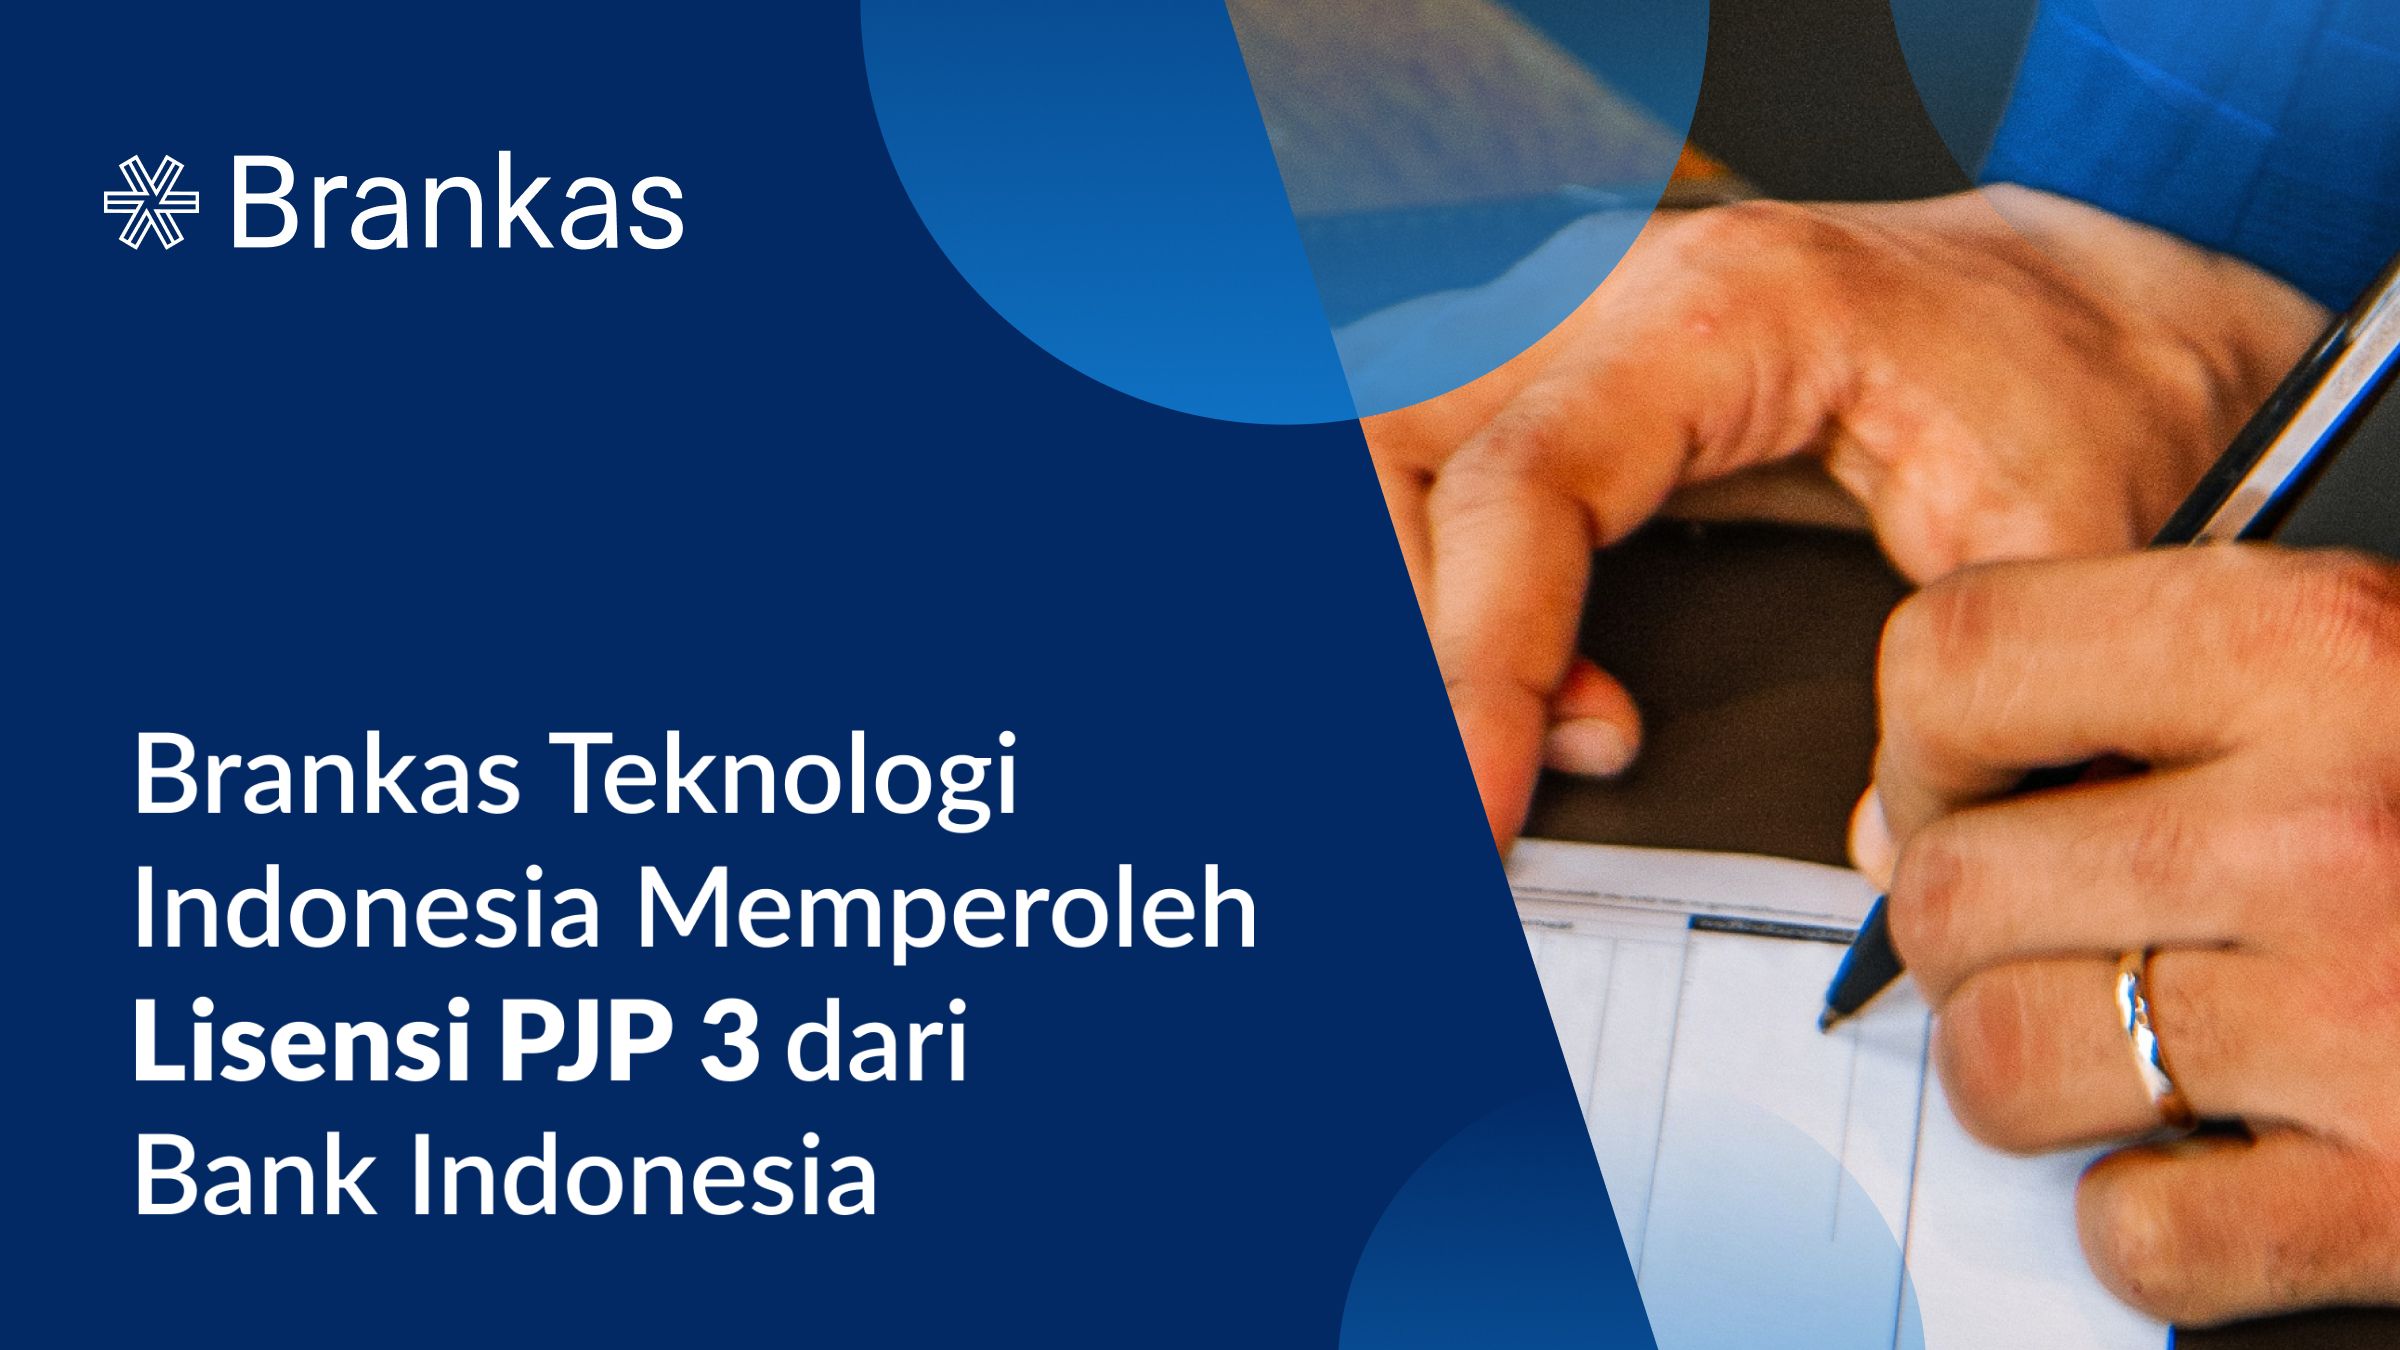 Brankas Memperoleh Lisensi PJP 3 dari Bank Indonesia, Membuka Peluang Baru untuk Inovasi Sistem Pembayaran